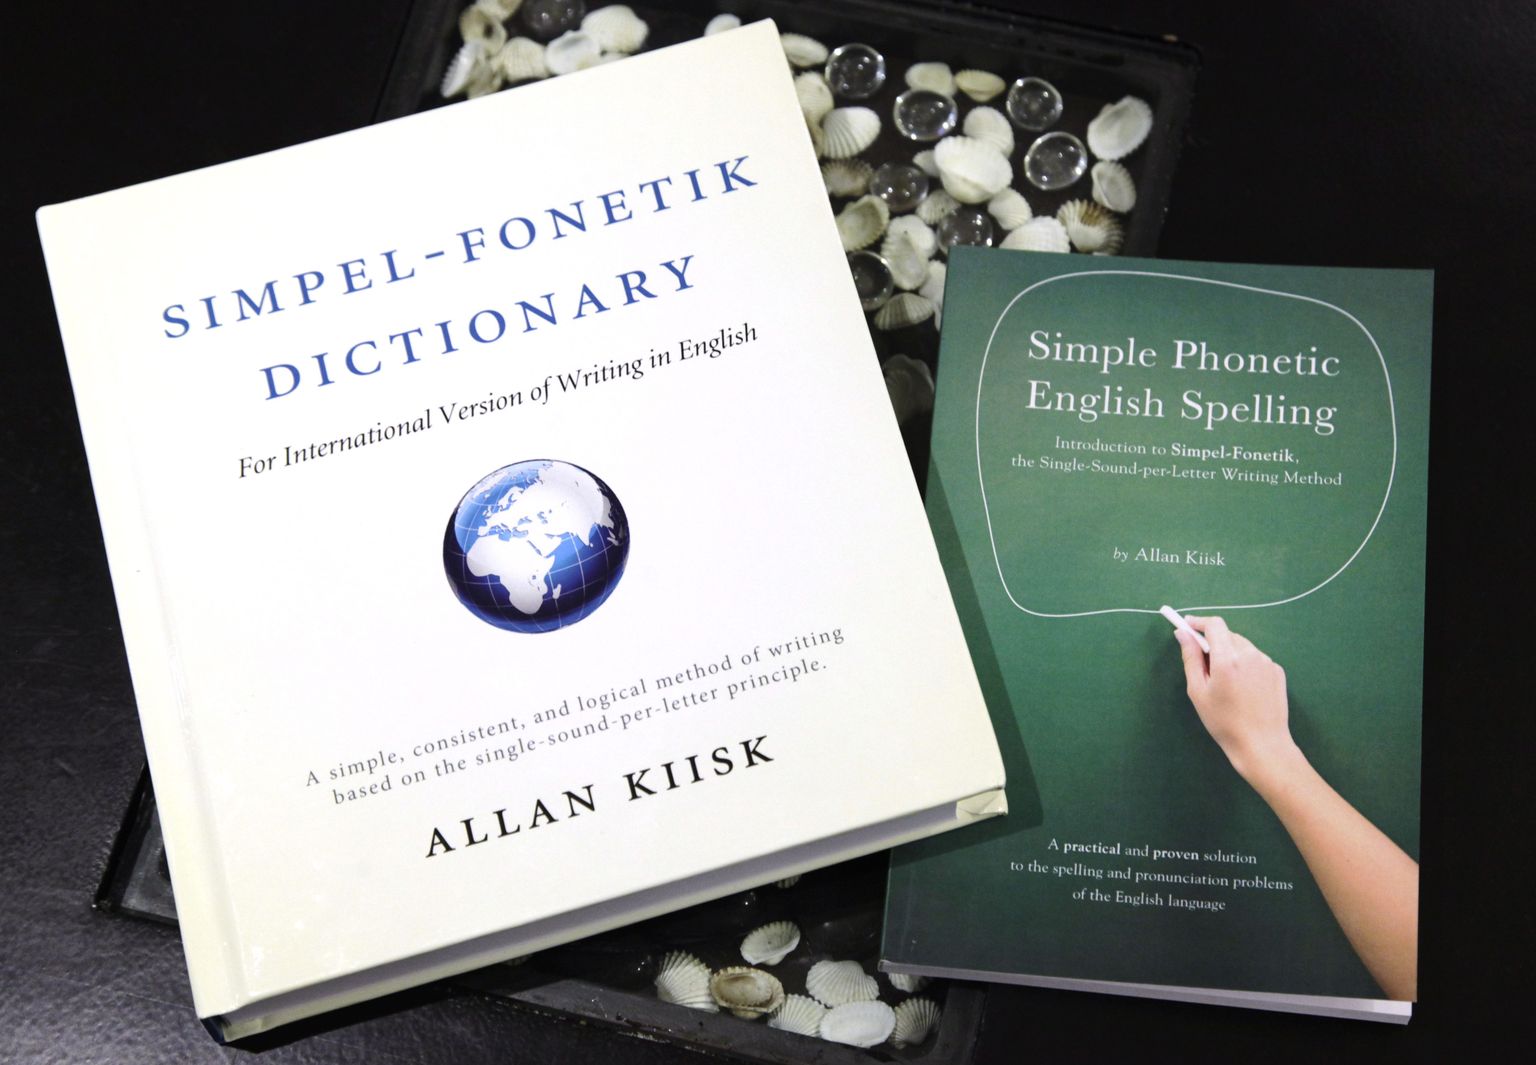 Raamatud, milles Allan Kiisk tutvustab oma ettepanekuid inglise keele kirjapildi lihtsustamiseks eesti keele eeskujul.